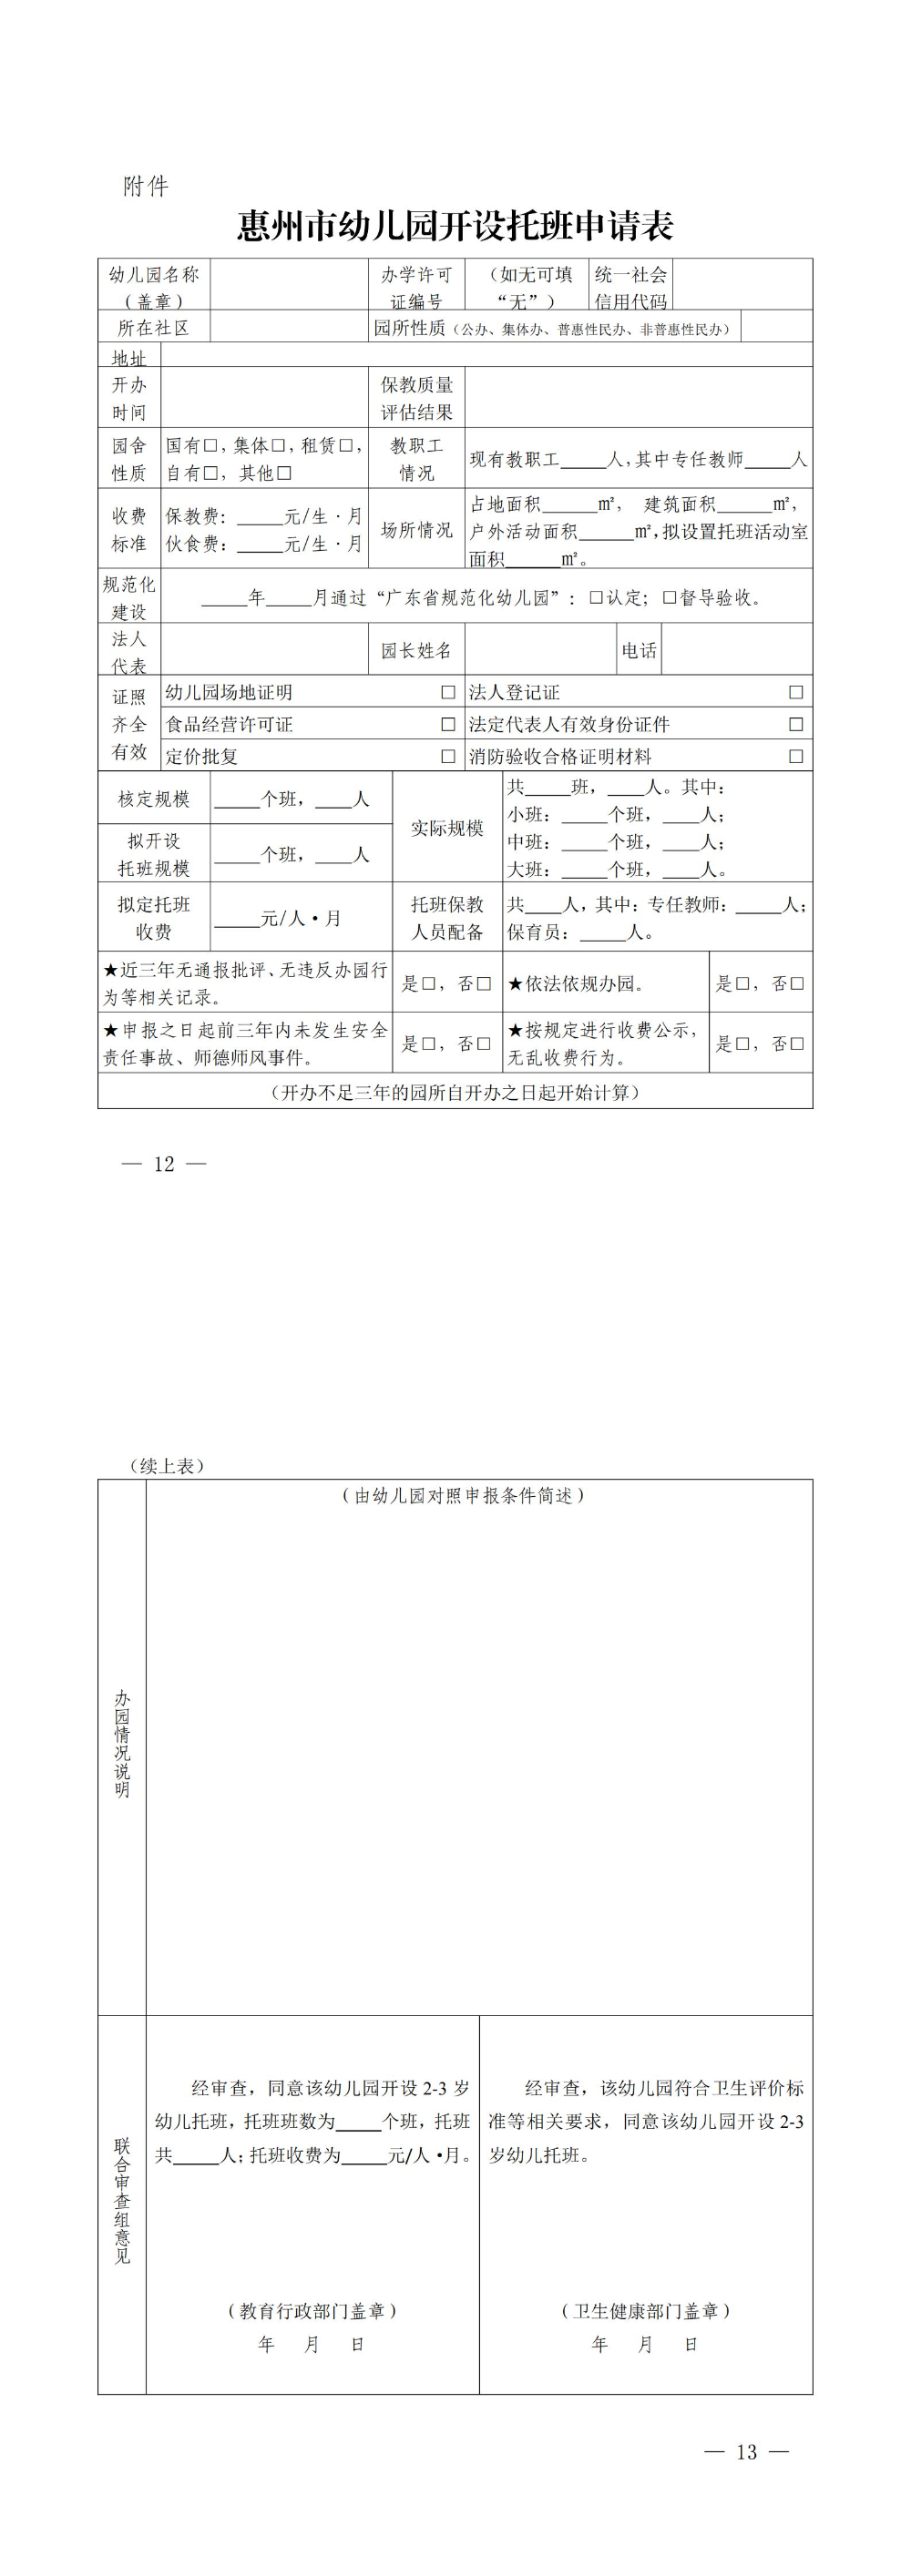 关于征求惠州市幼儿园托班开设与管理暂行办法（征求意见稿）意见的公告_00(2).jpg